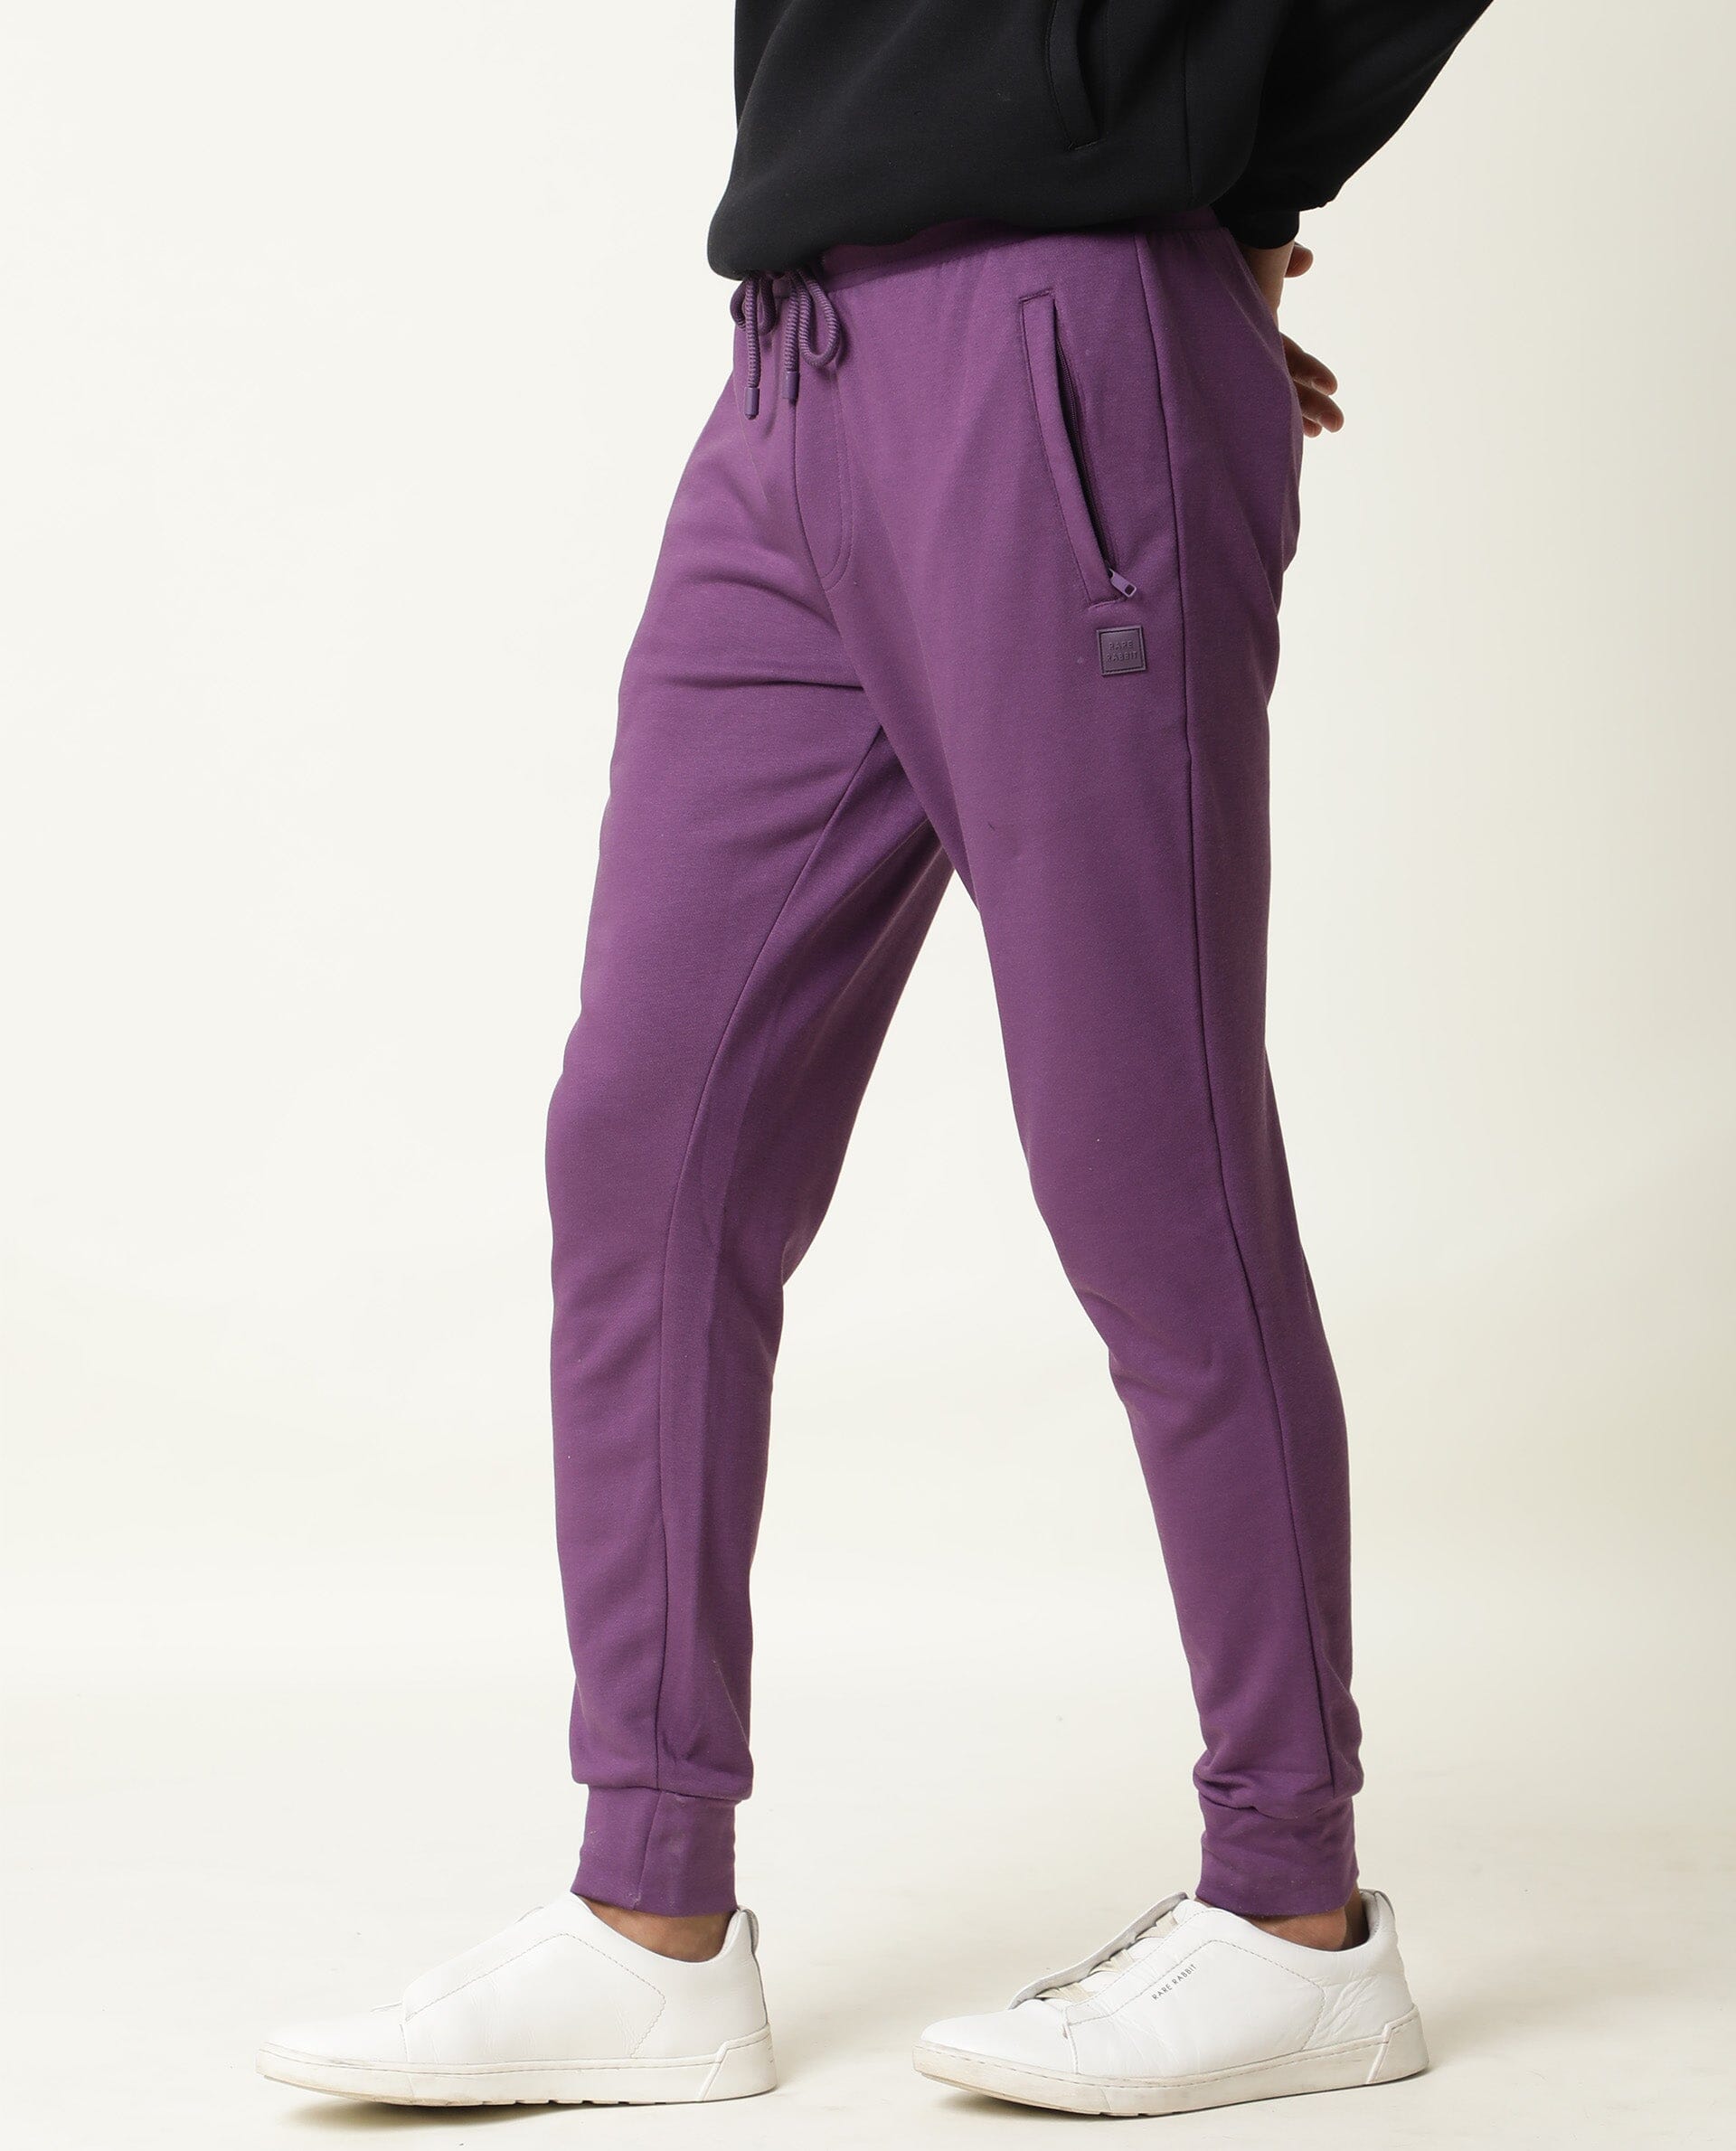 Buy Purple Track Pants for Men by Styli Online  Ajiocom